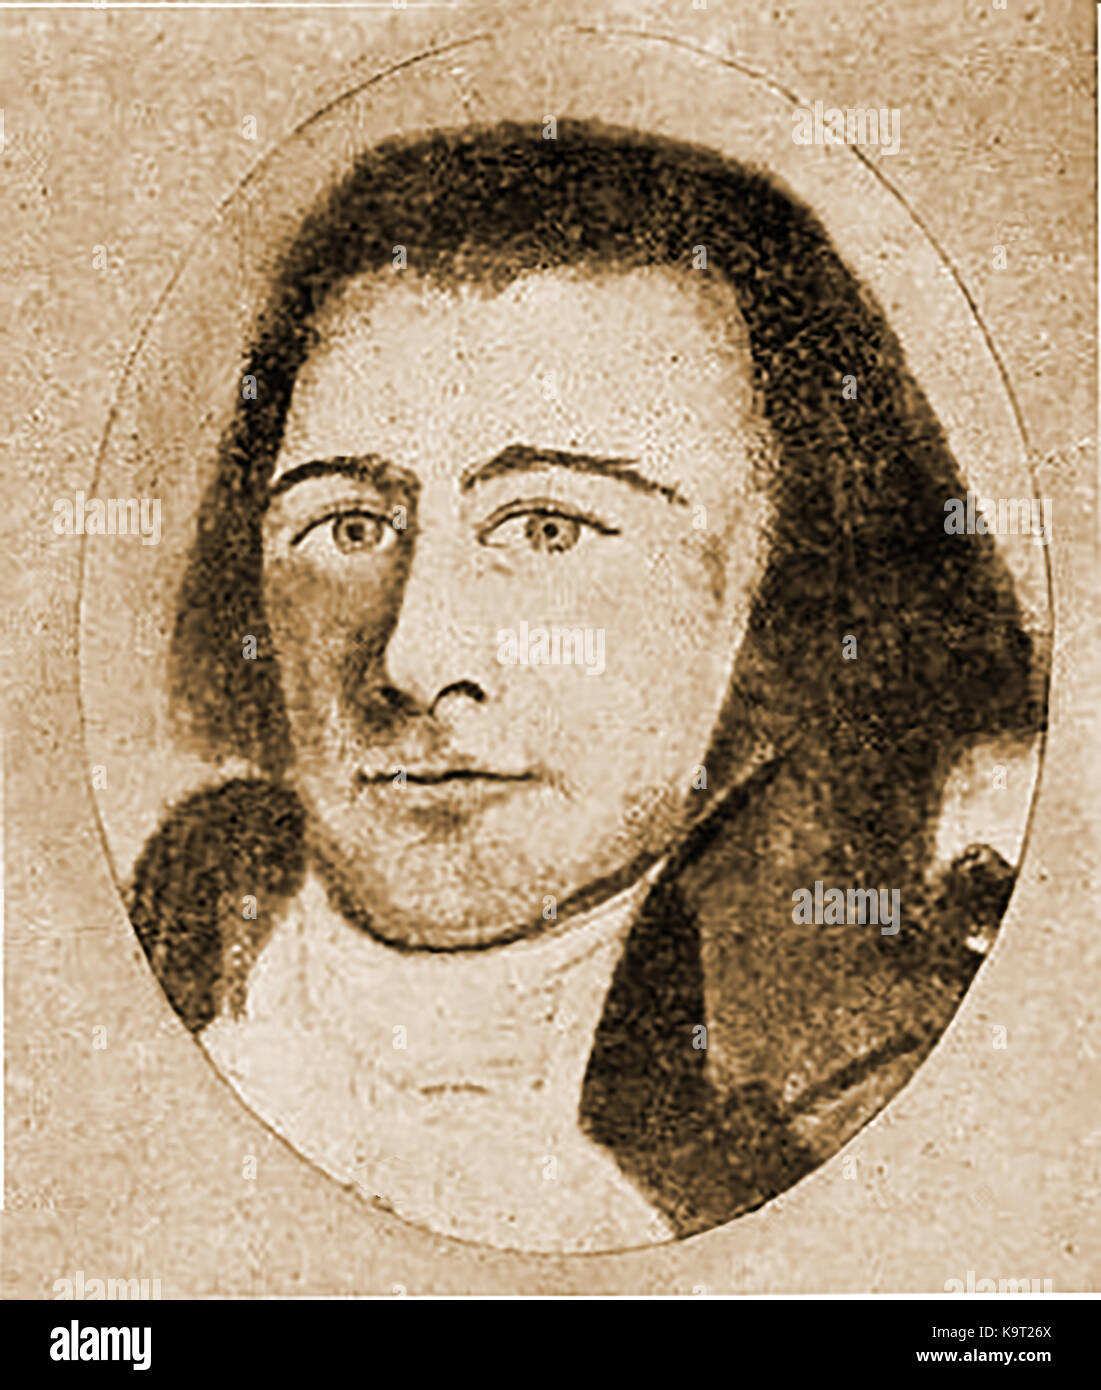 1799 Un retrato del Capitán James Deveraux de Salem quien lideró el barco de Boston "Franklin", y se le atribuye el mérito de ser uno de los primeros capitanes americana al comercio win Japón Foto de stock